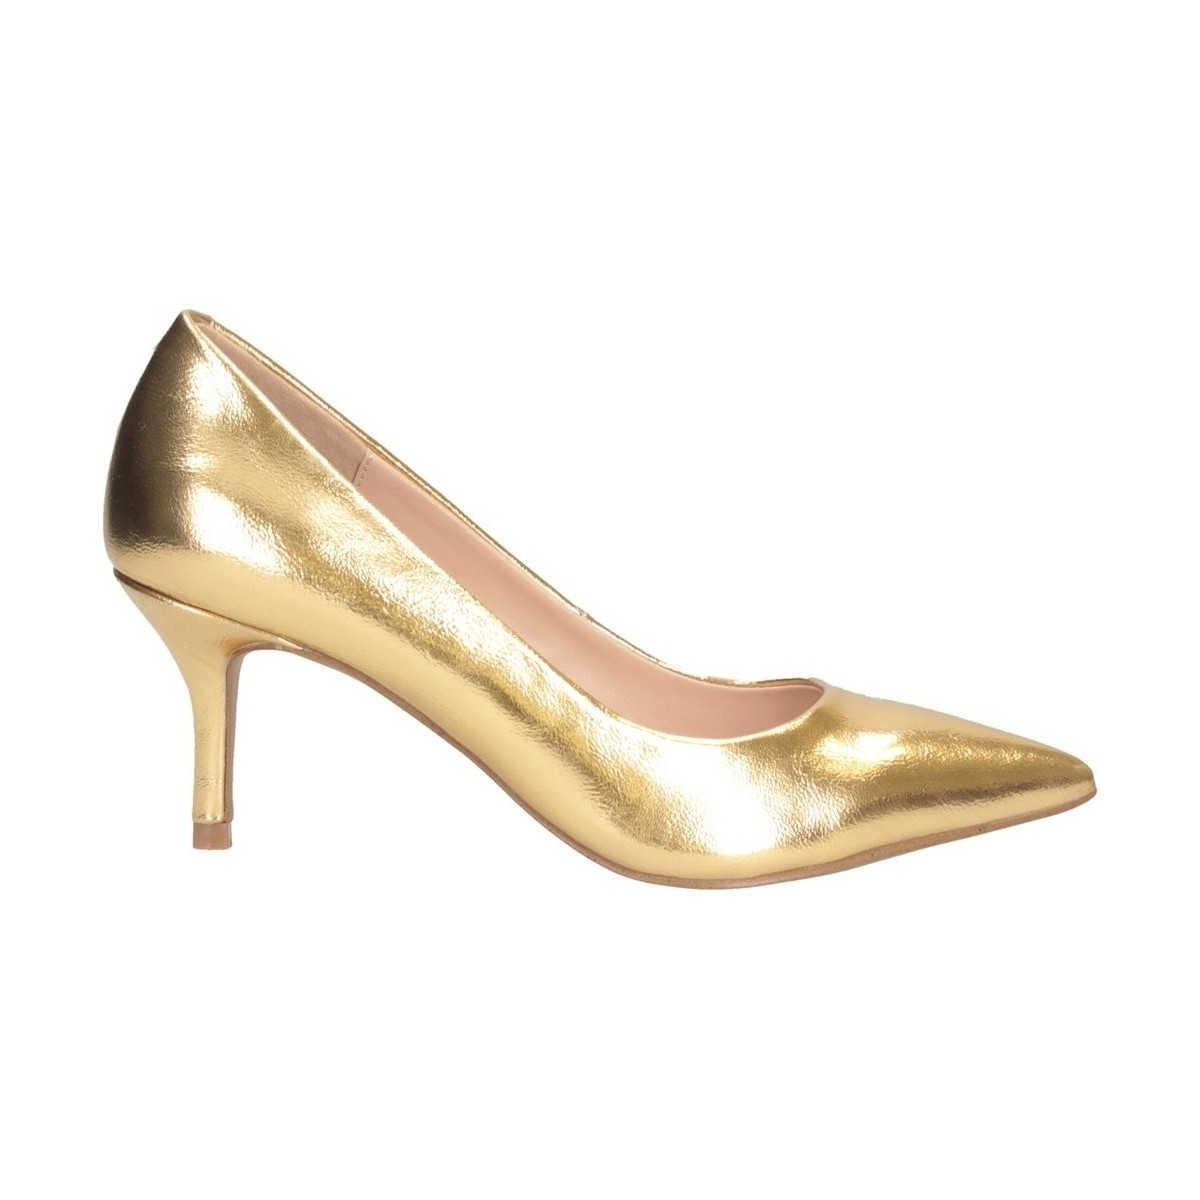 Schuhe Damen Sandalen / Sandaletten Steve Madden SMSKITKAT-GLD Pumps Frau GOLD Gold